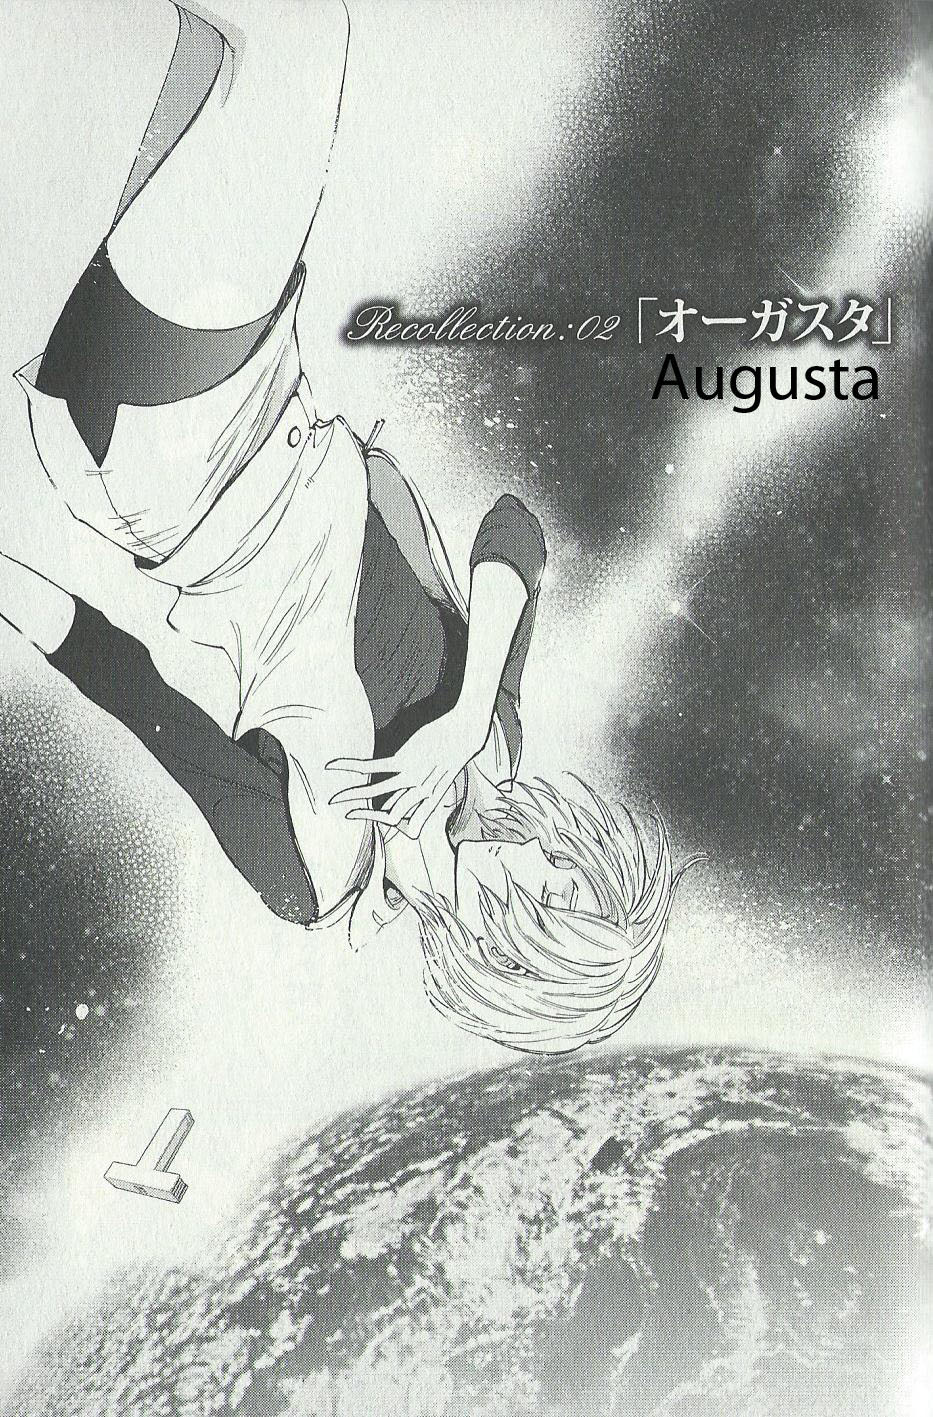 Kidou Senshi Gundam Gyakushuu no Char: Beyond the Time Vol. 1 Ch. 2 Augusta